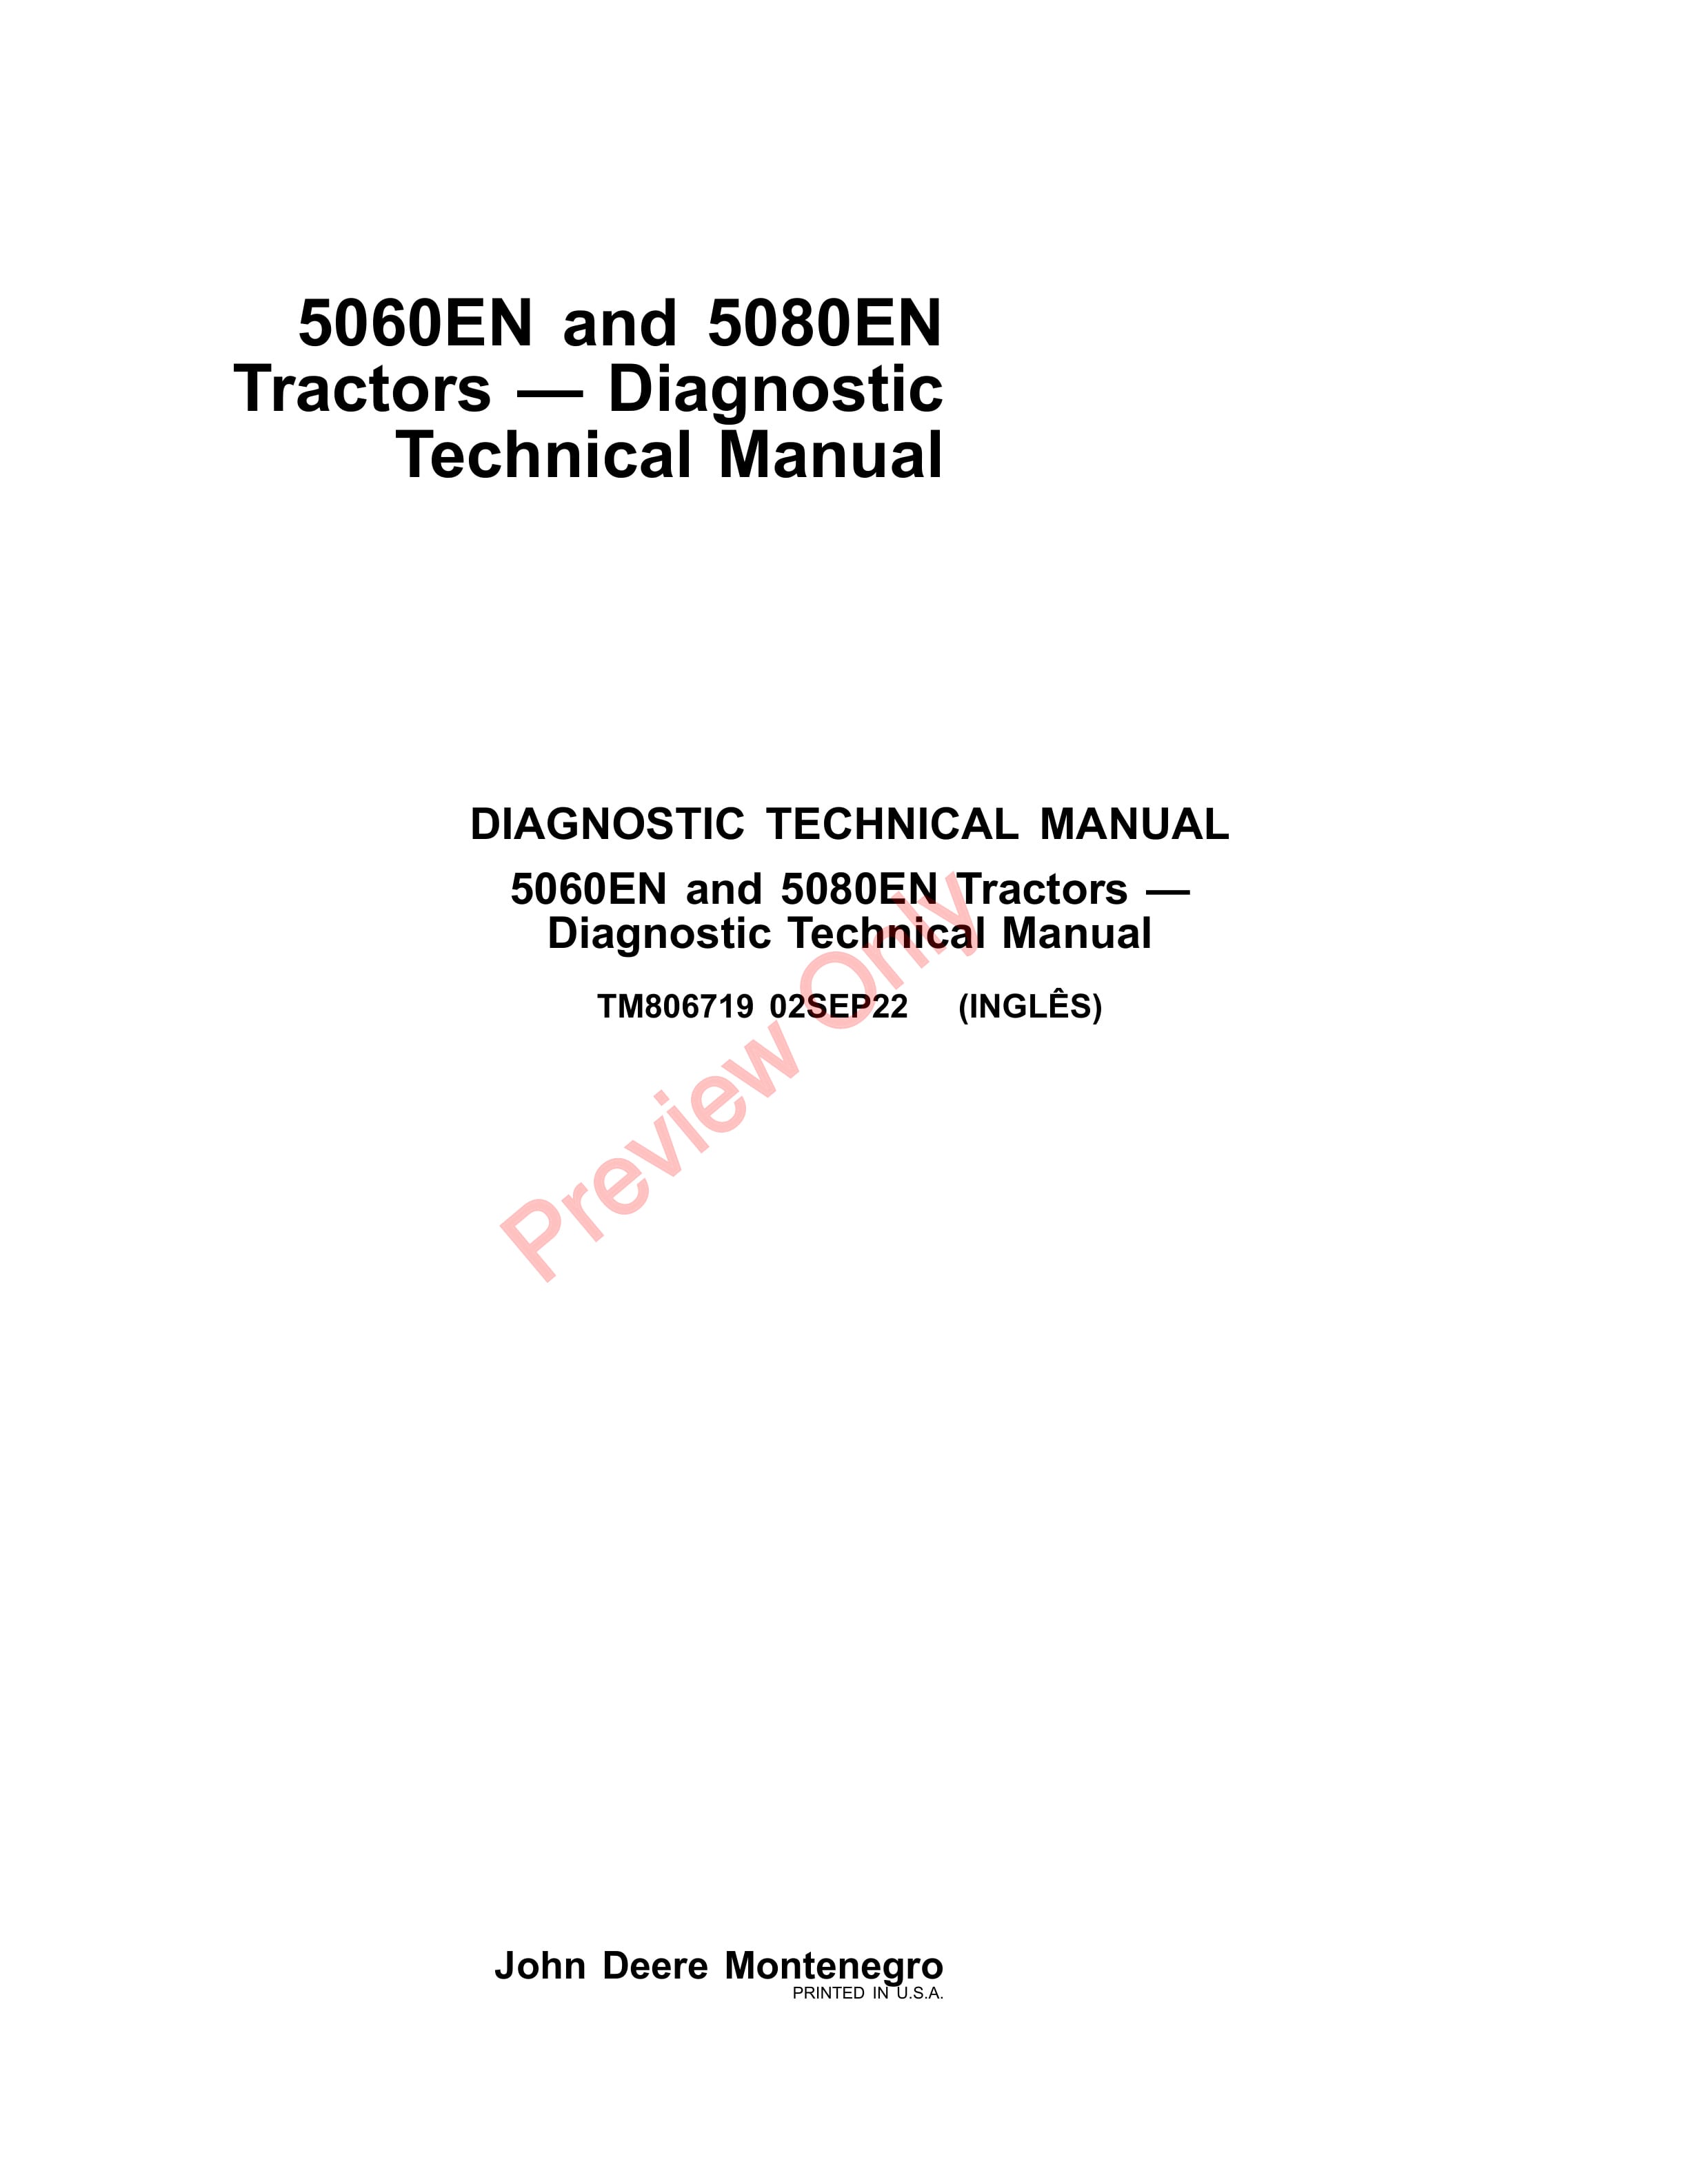 John Deere 5060EN and 5080EN Tractors Diagnostic Technical Manual TM806719 02SEP22 1